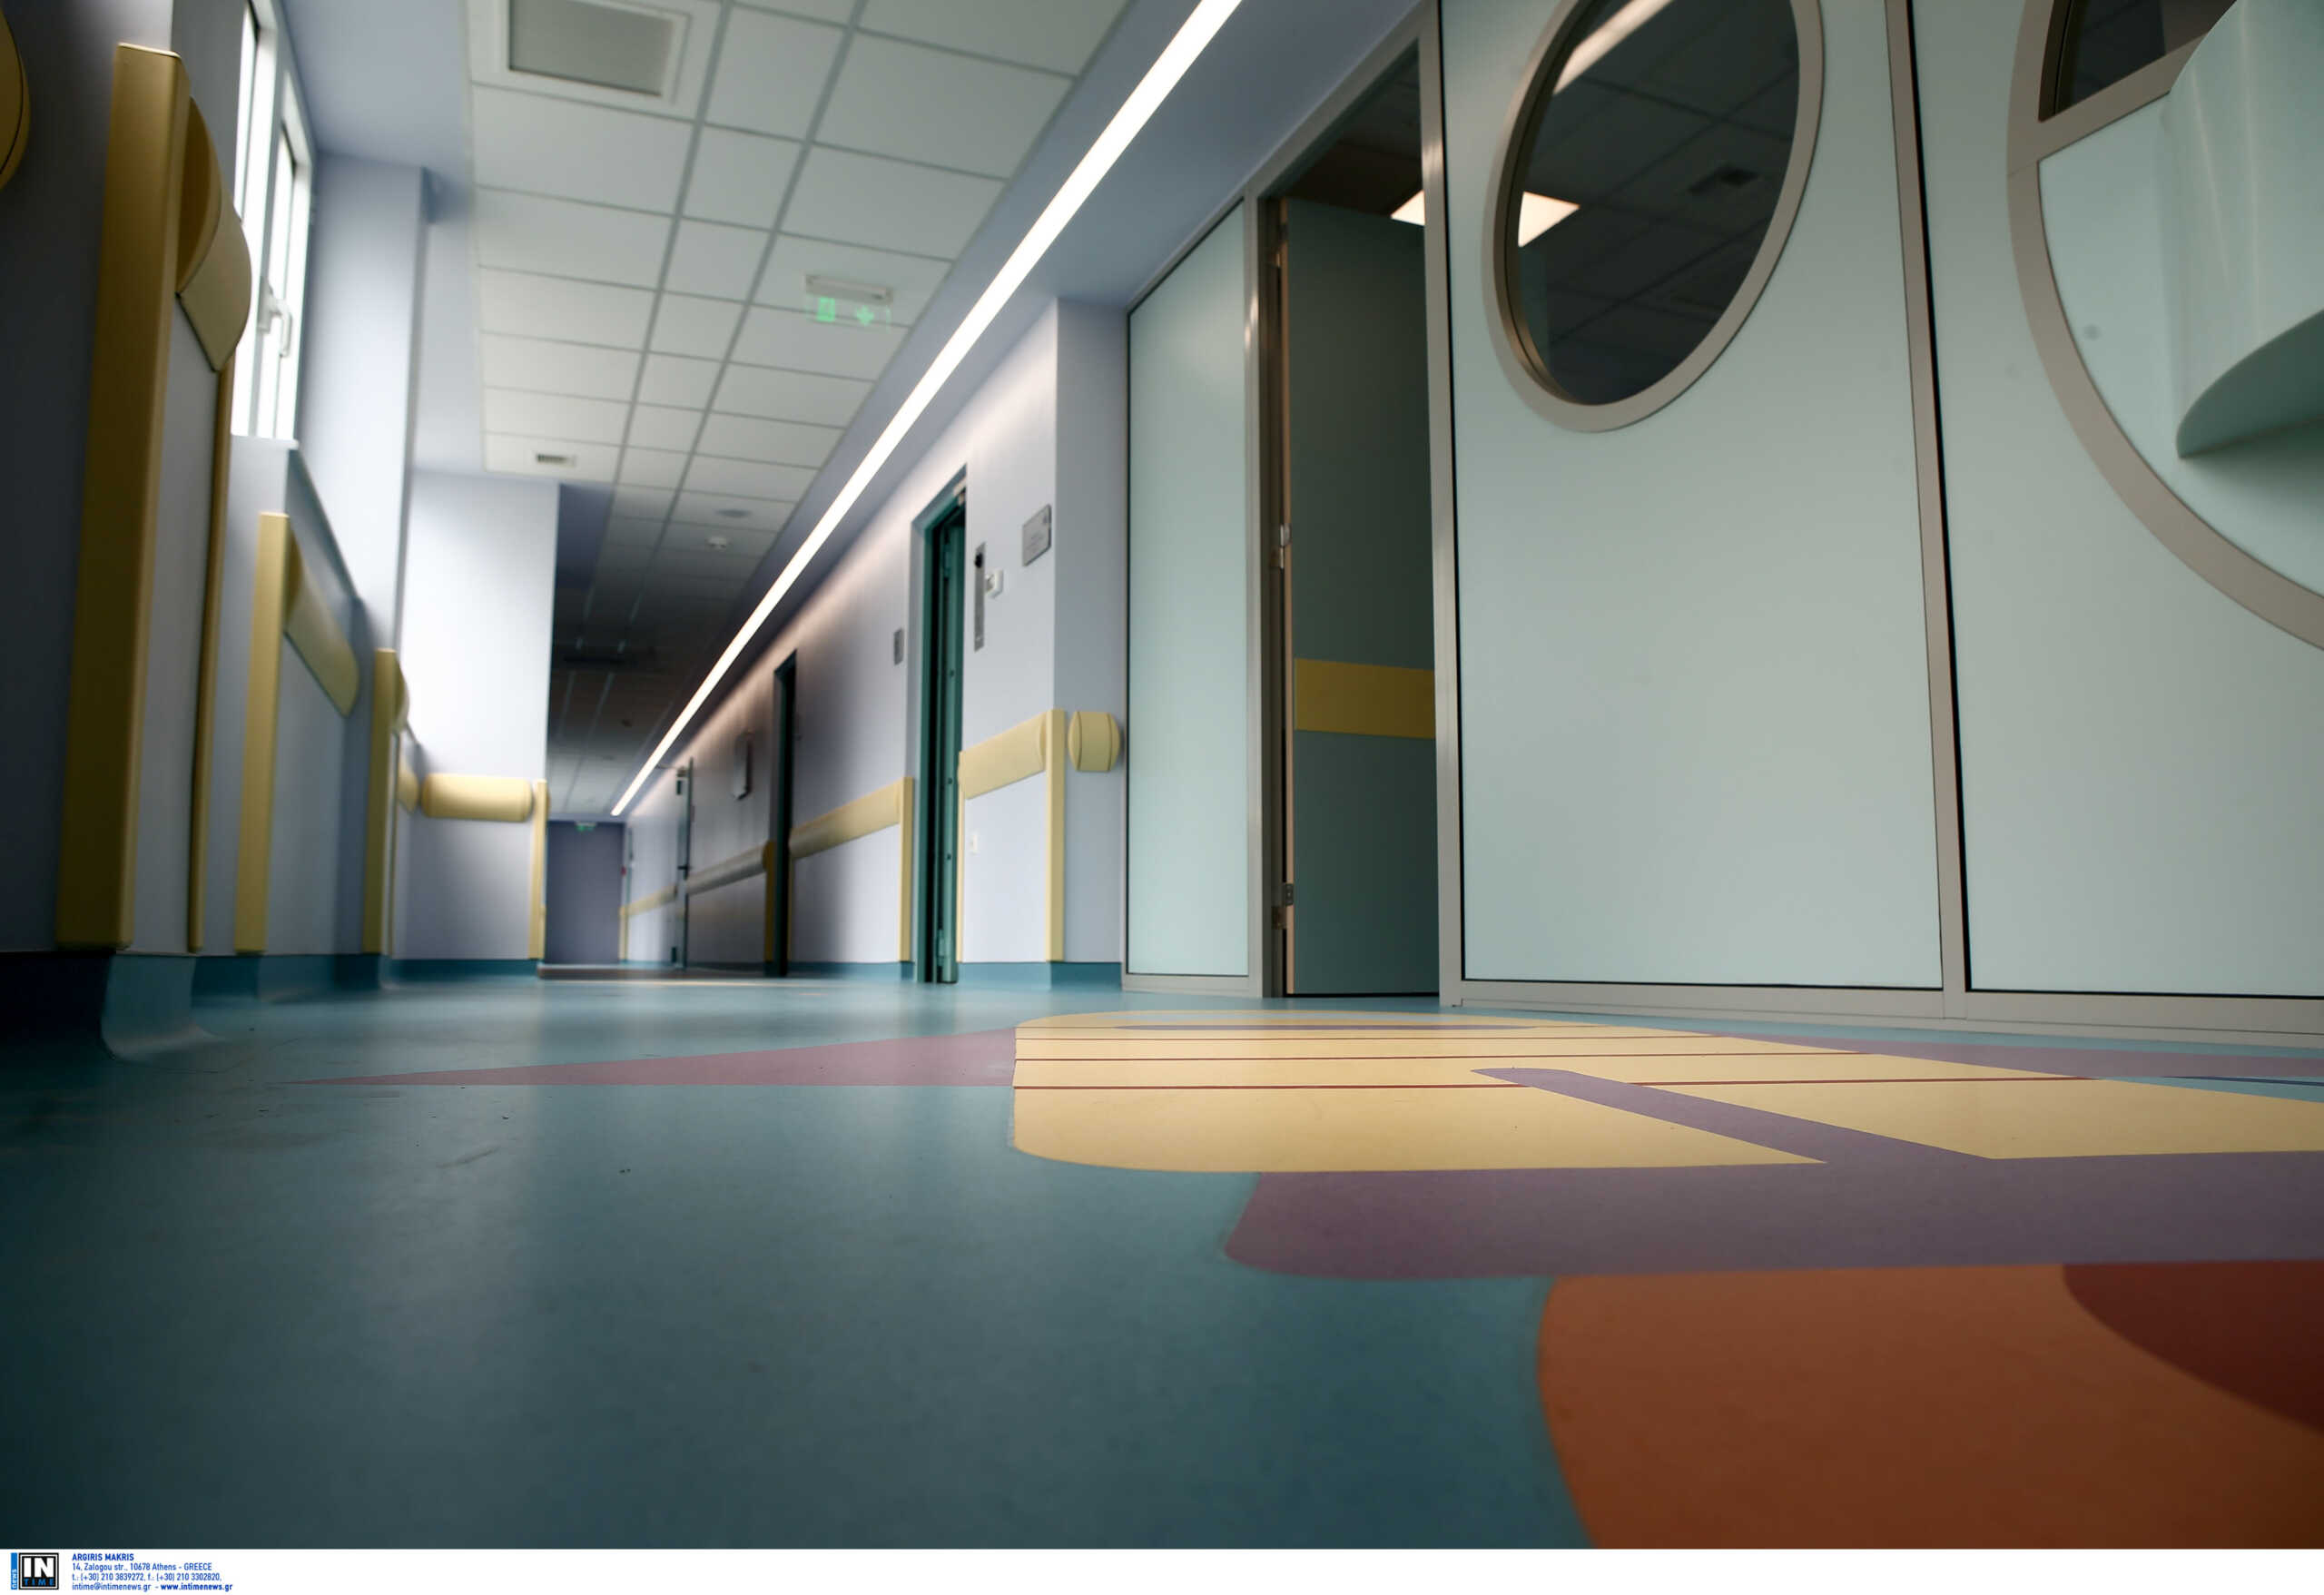 Νοσοκομεία Παίδων: Τα παιδιά τρέχουν σαν αγρίμια στα δωμάτια ουρλιάζοντας, καταγγέλλει φιλοξενούμενη μητέρα